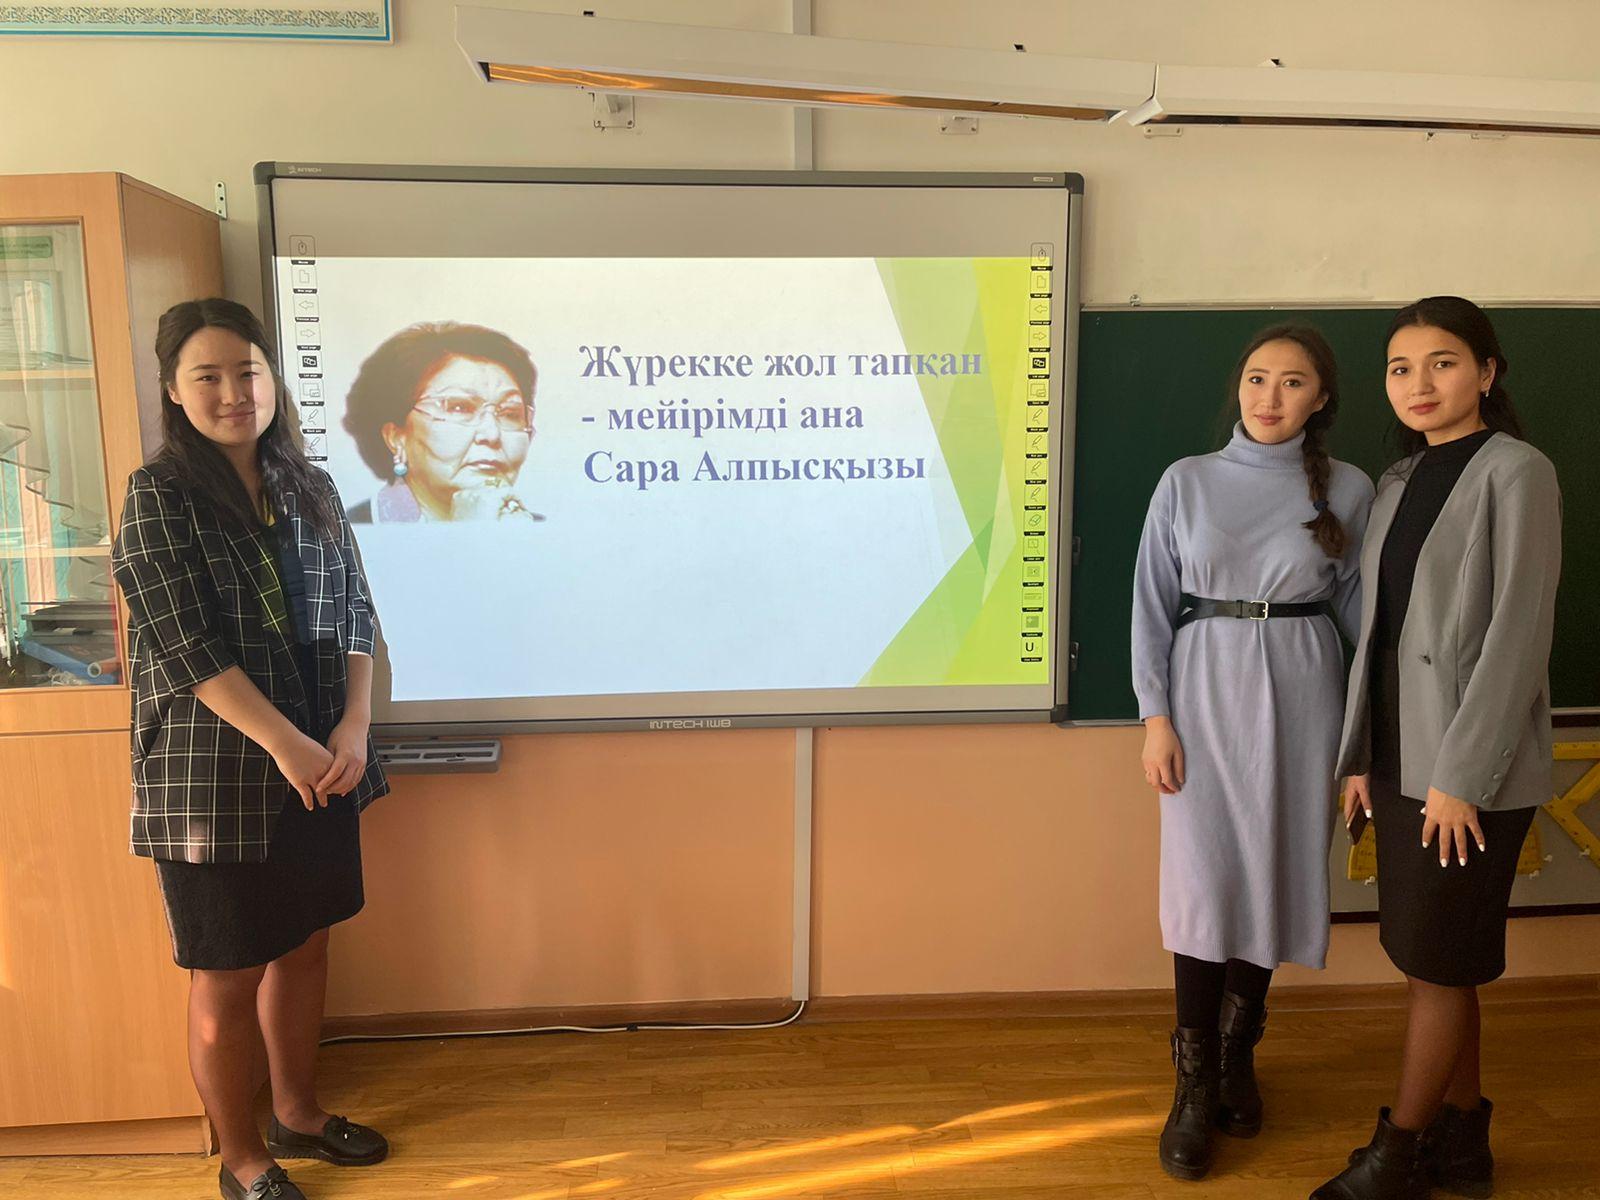 Видеоролик о деятельности первой леди Казахстана